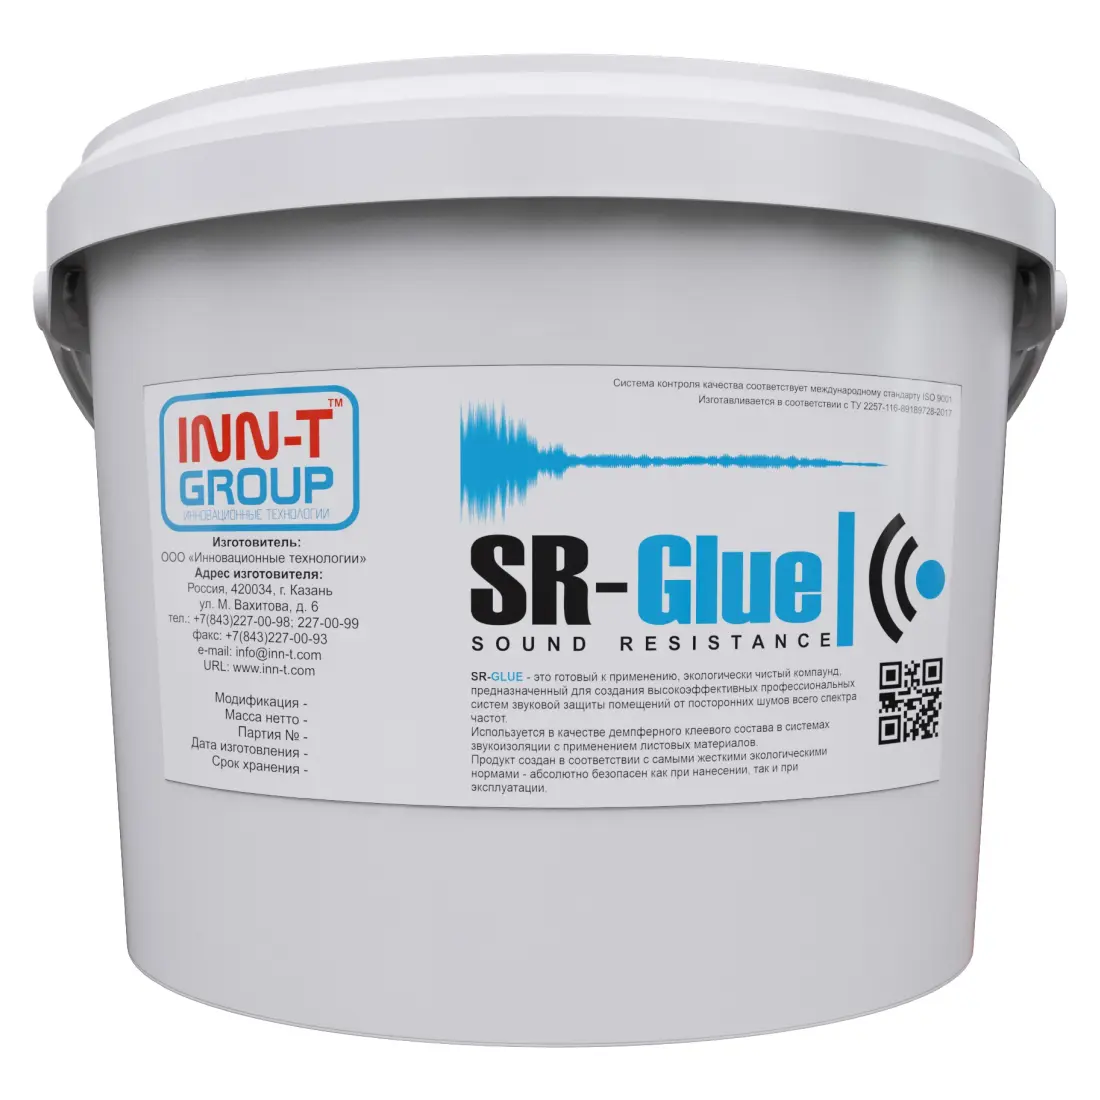 Звукоизоляция SR-GLUE шумоизоляция звукоизоляция квартиры звукоизоляция стен звукоизоляция потолка звукоизоляция пола звукоизоляция перегородок